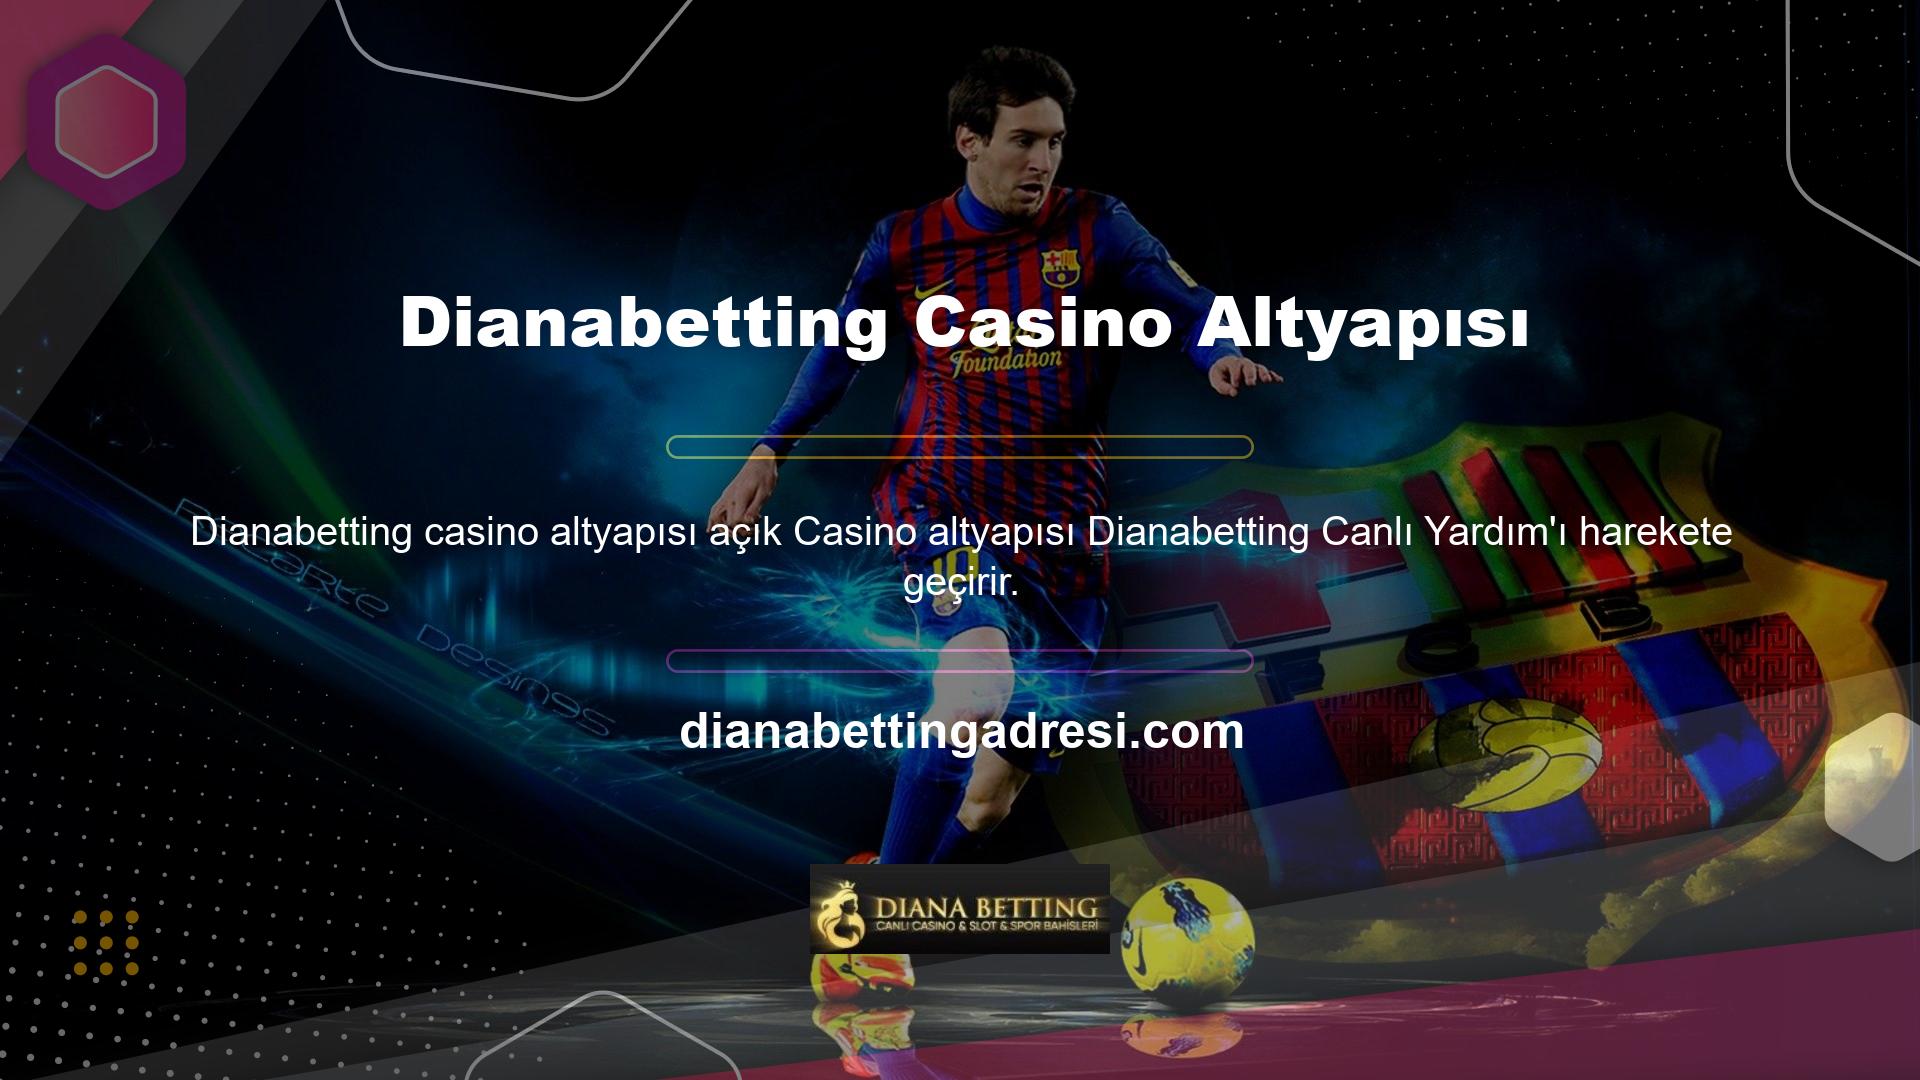 Dianabetting geniş bir casino oyunu yelpazesi sunar